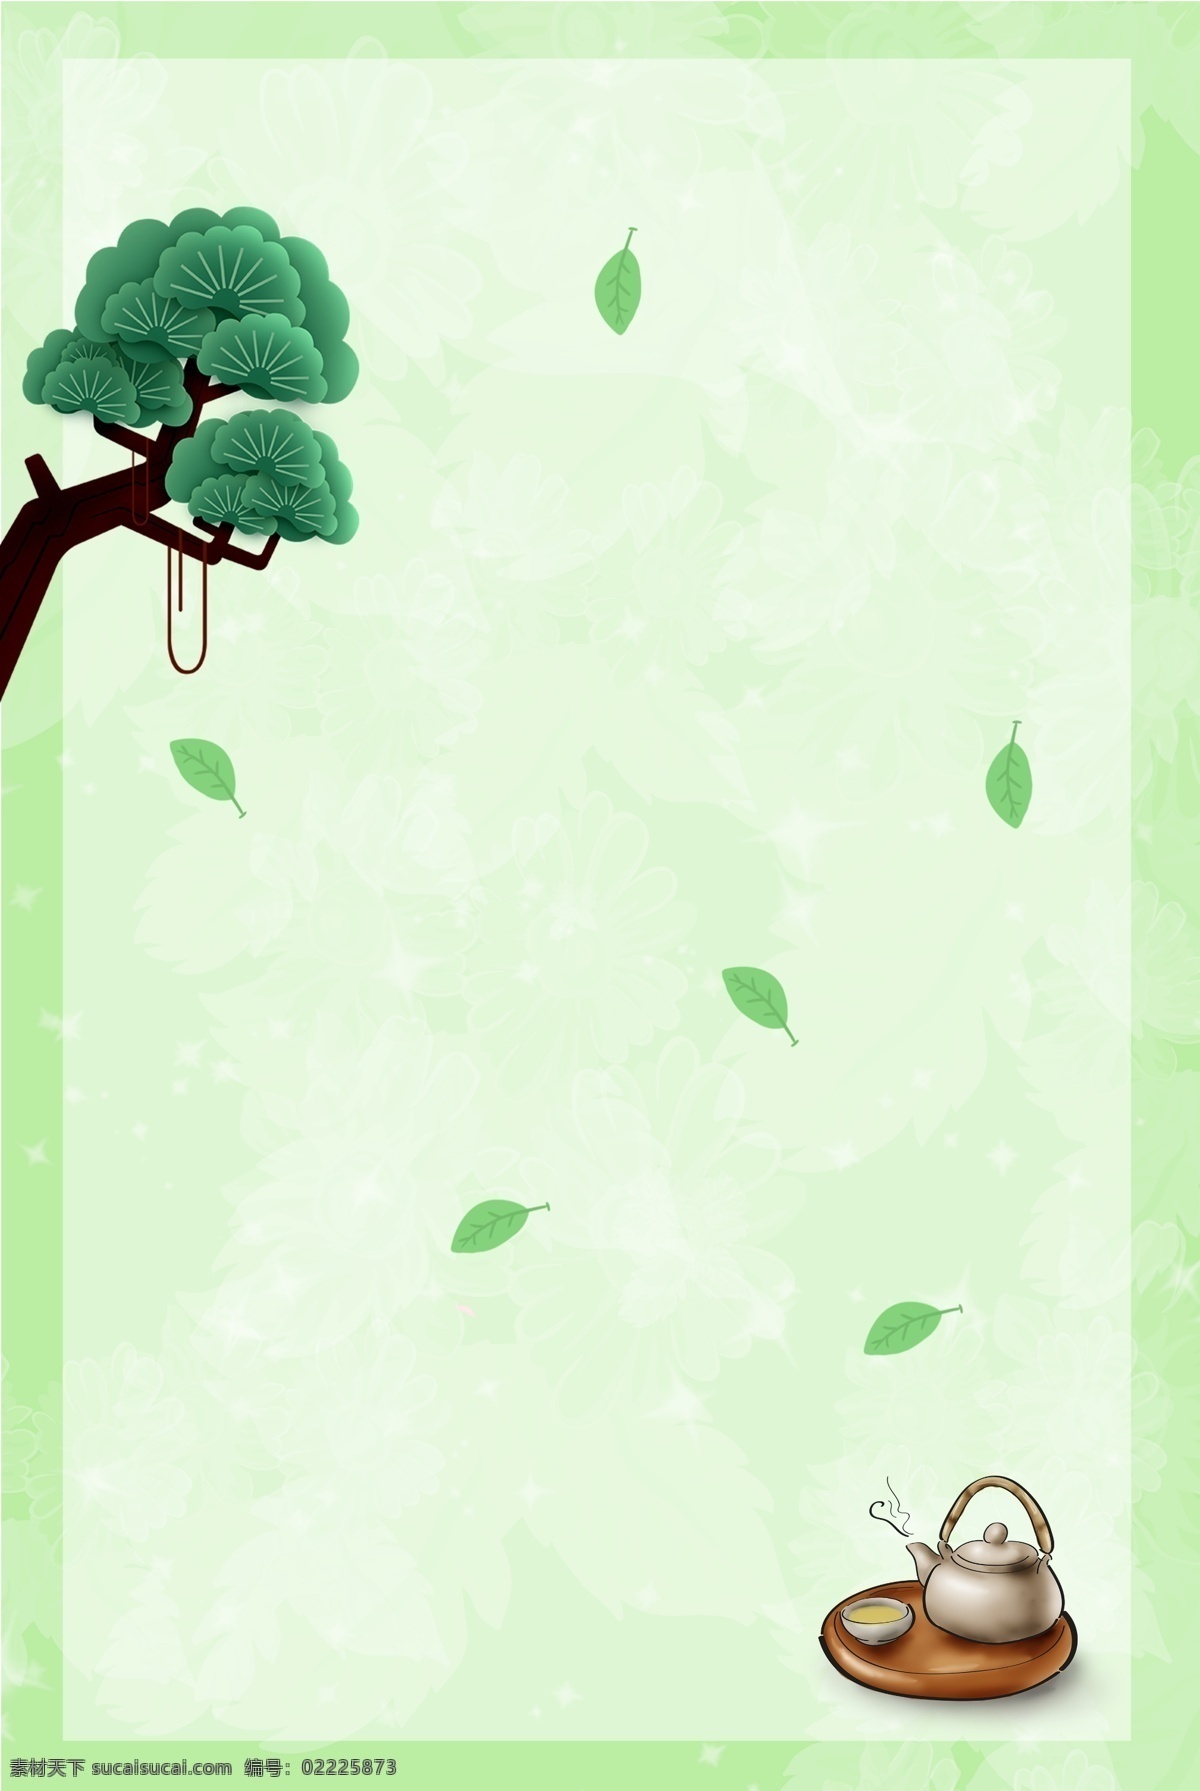 春茶 节 简约 扁平 绿色 背景 图 春茶节 树叶 树枝 透明图层 绿色质感底纹 背景图 海报